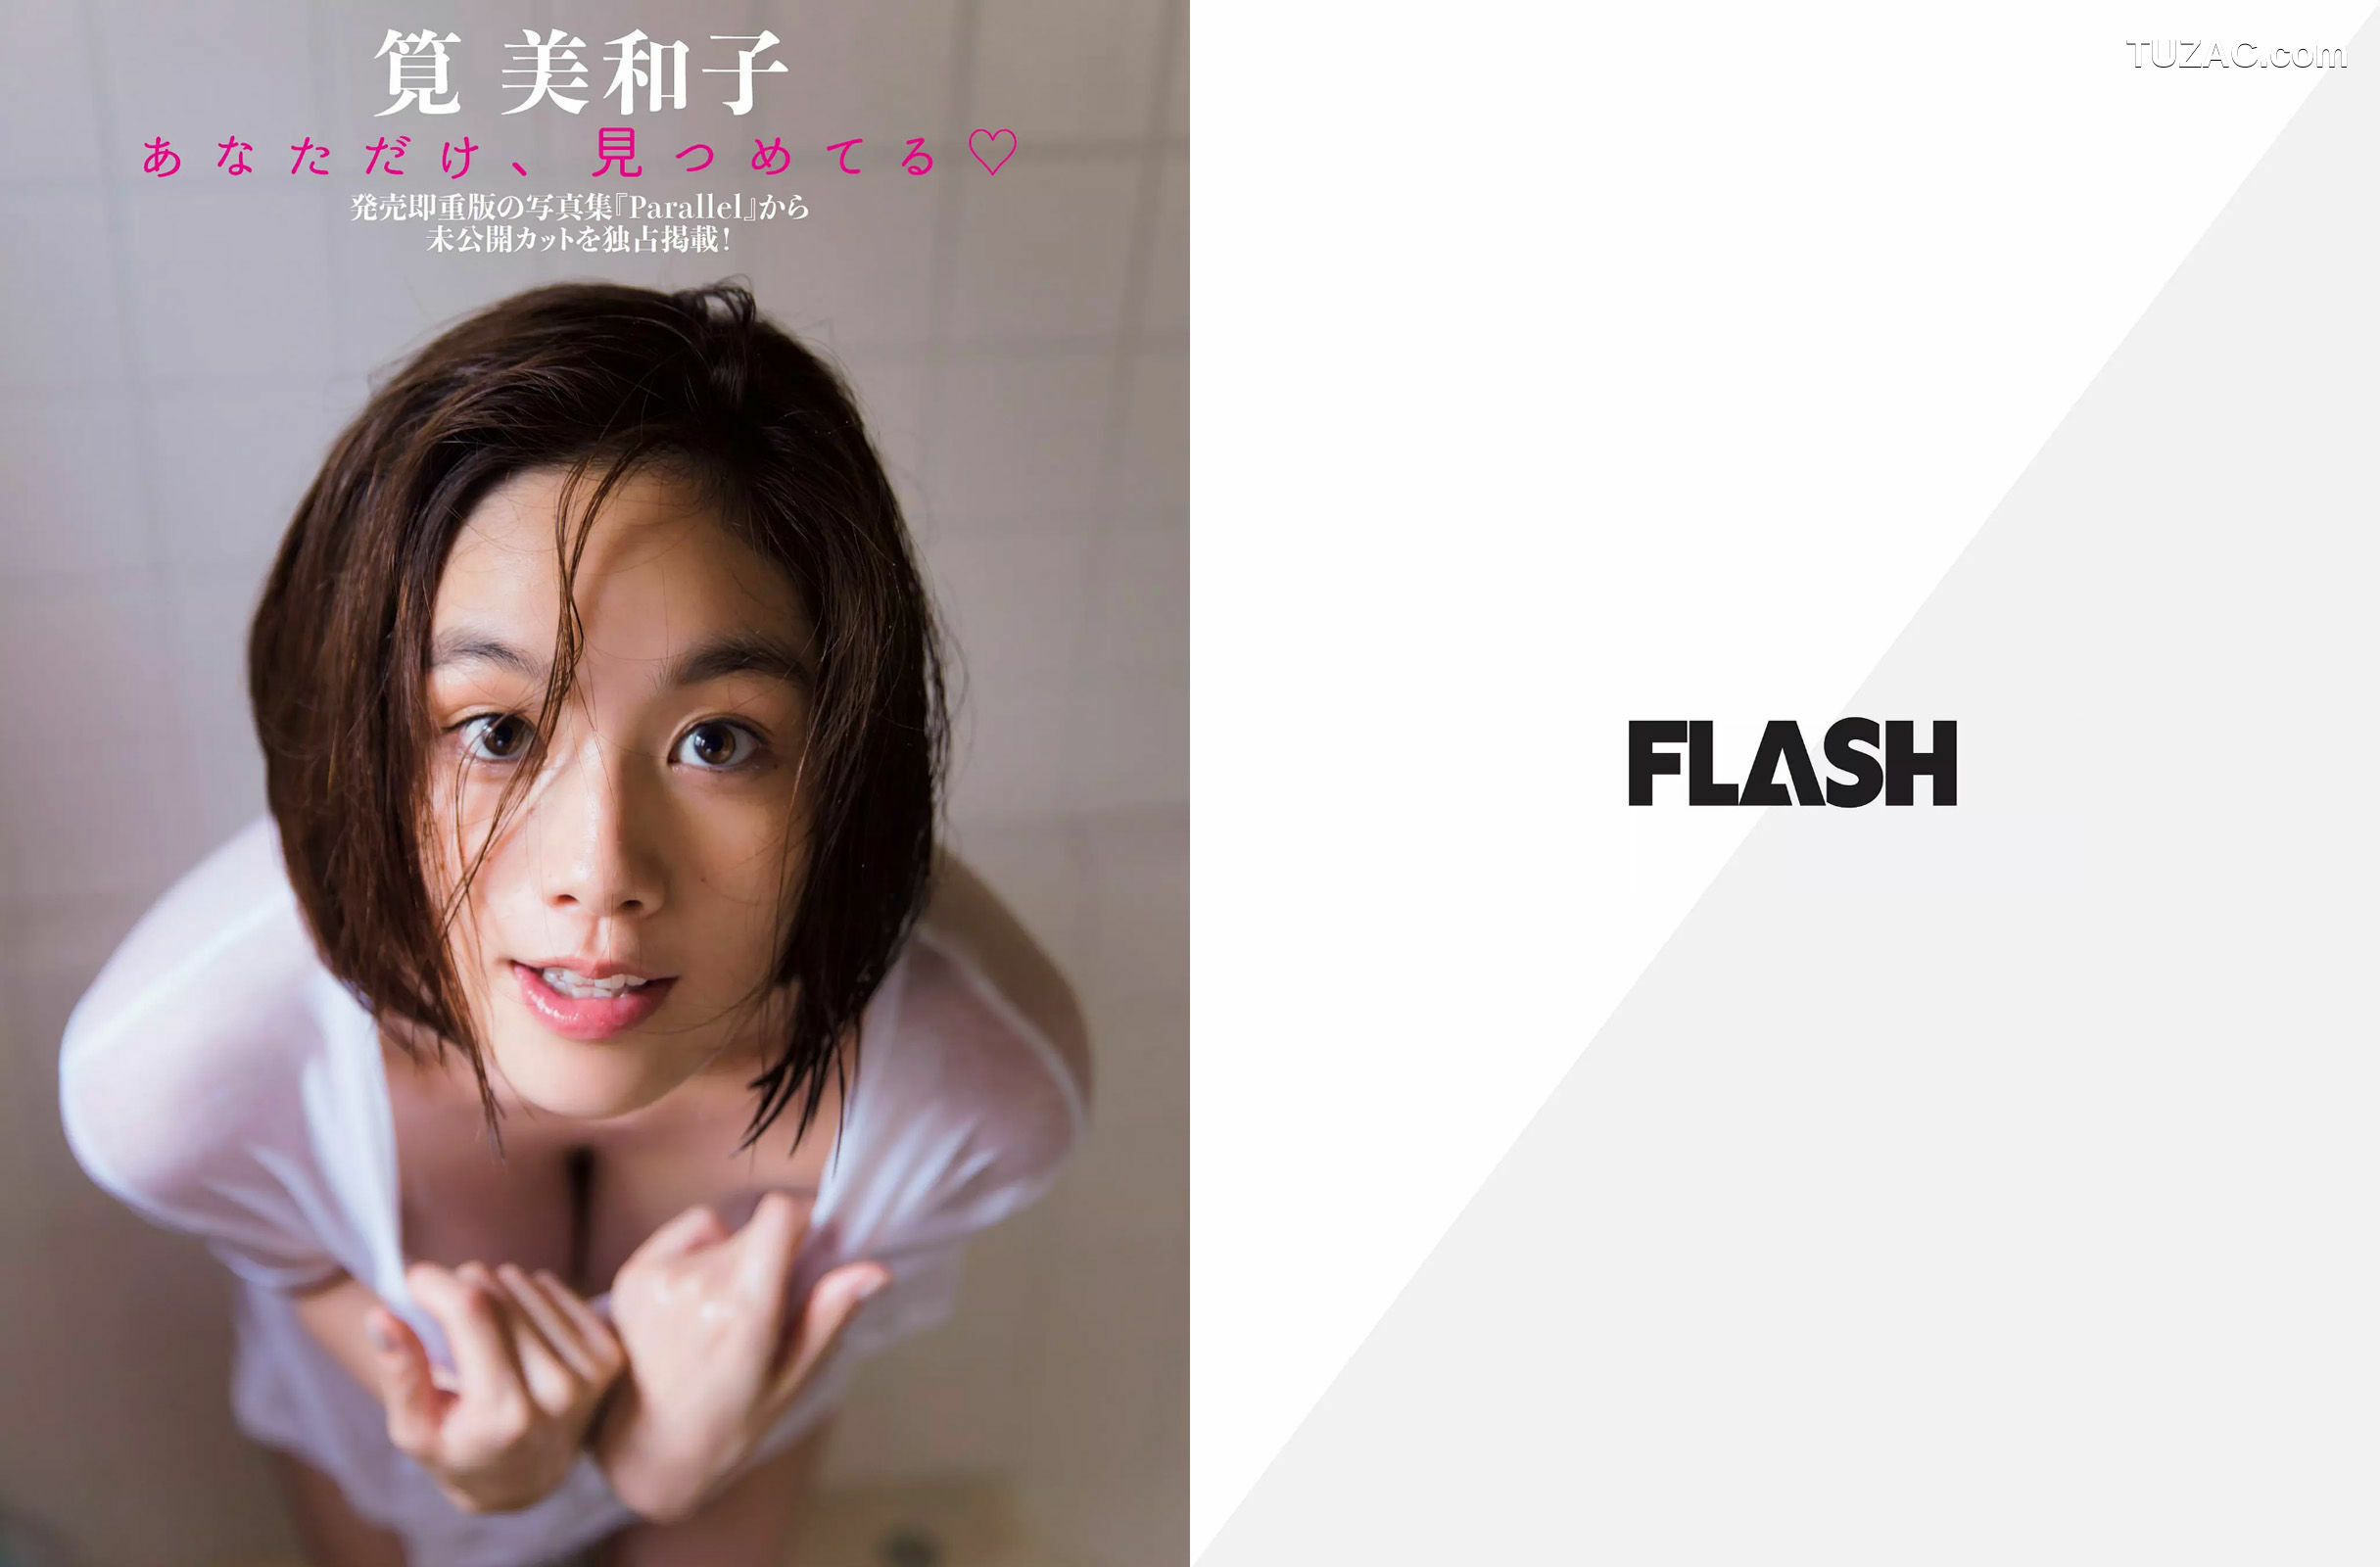 FLASH杂志写真_ 筧美和子 岡田奈々 柳ゆり菜 2017.01.10 写真杂志[11P]